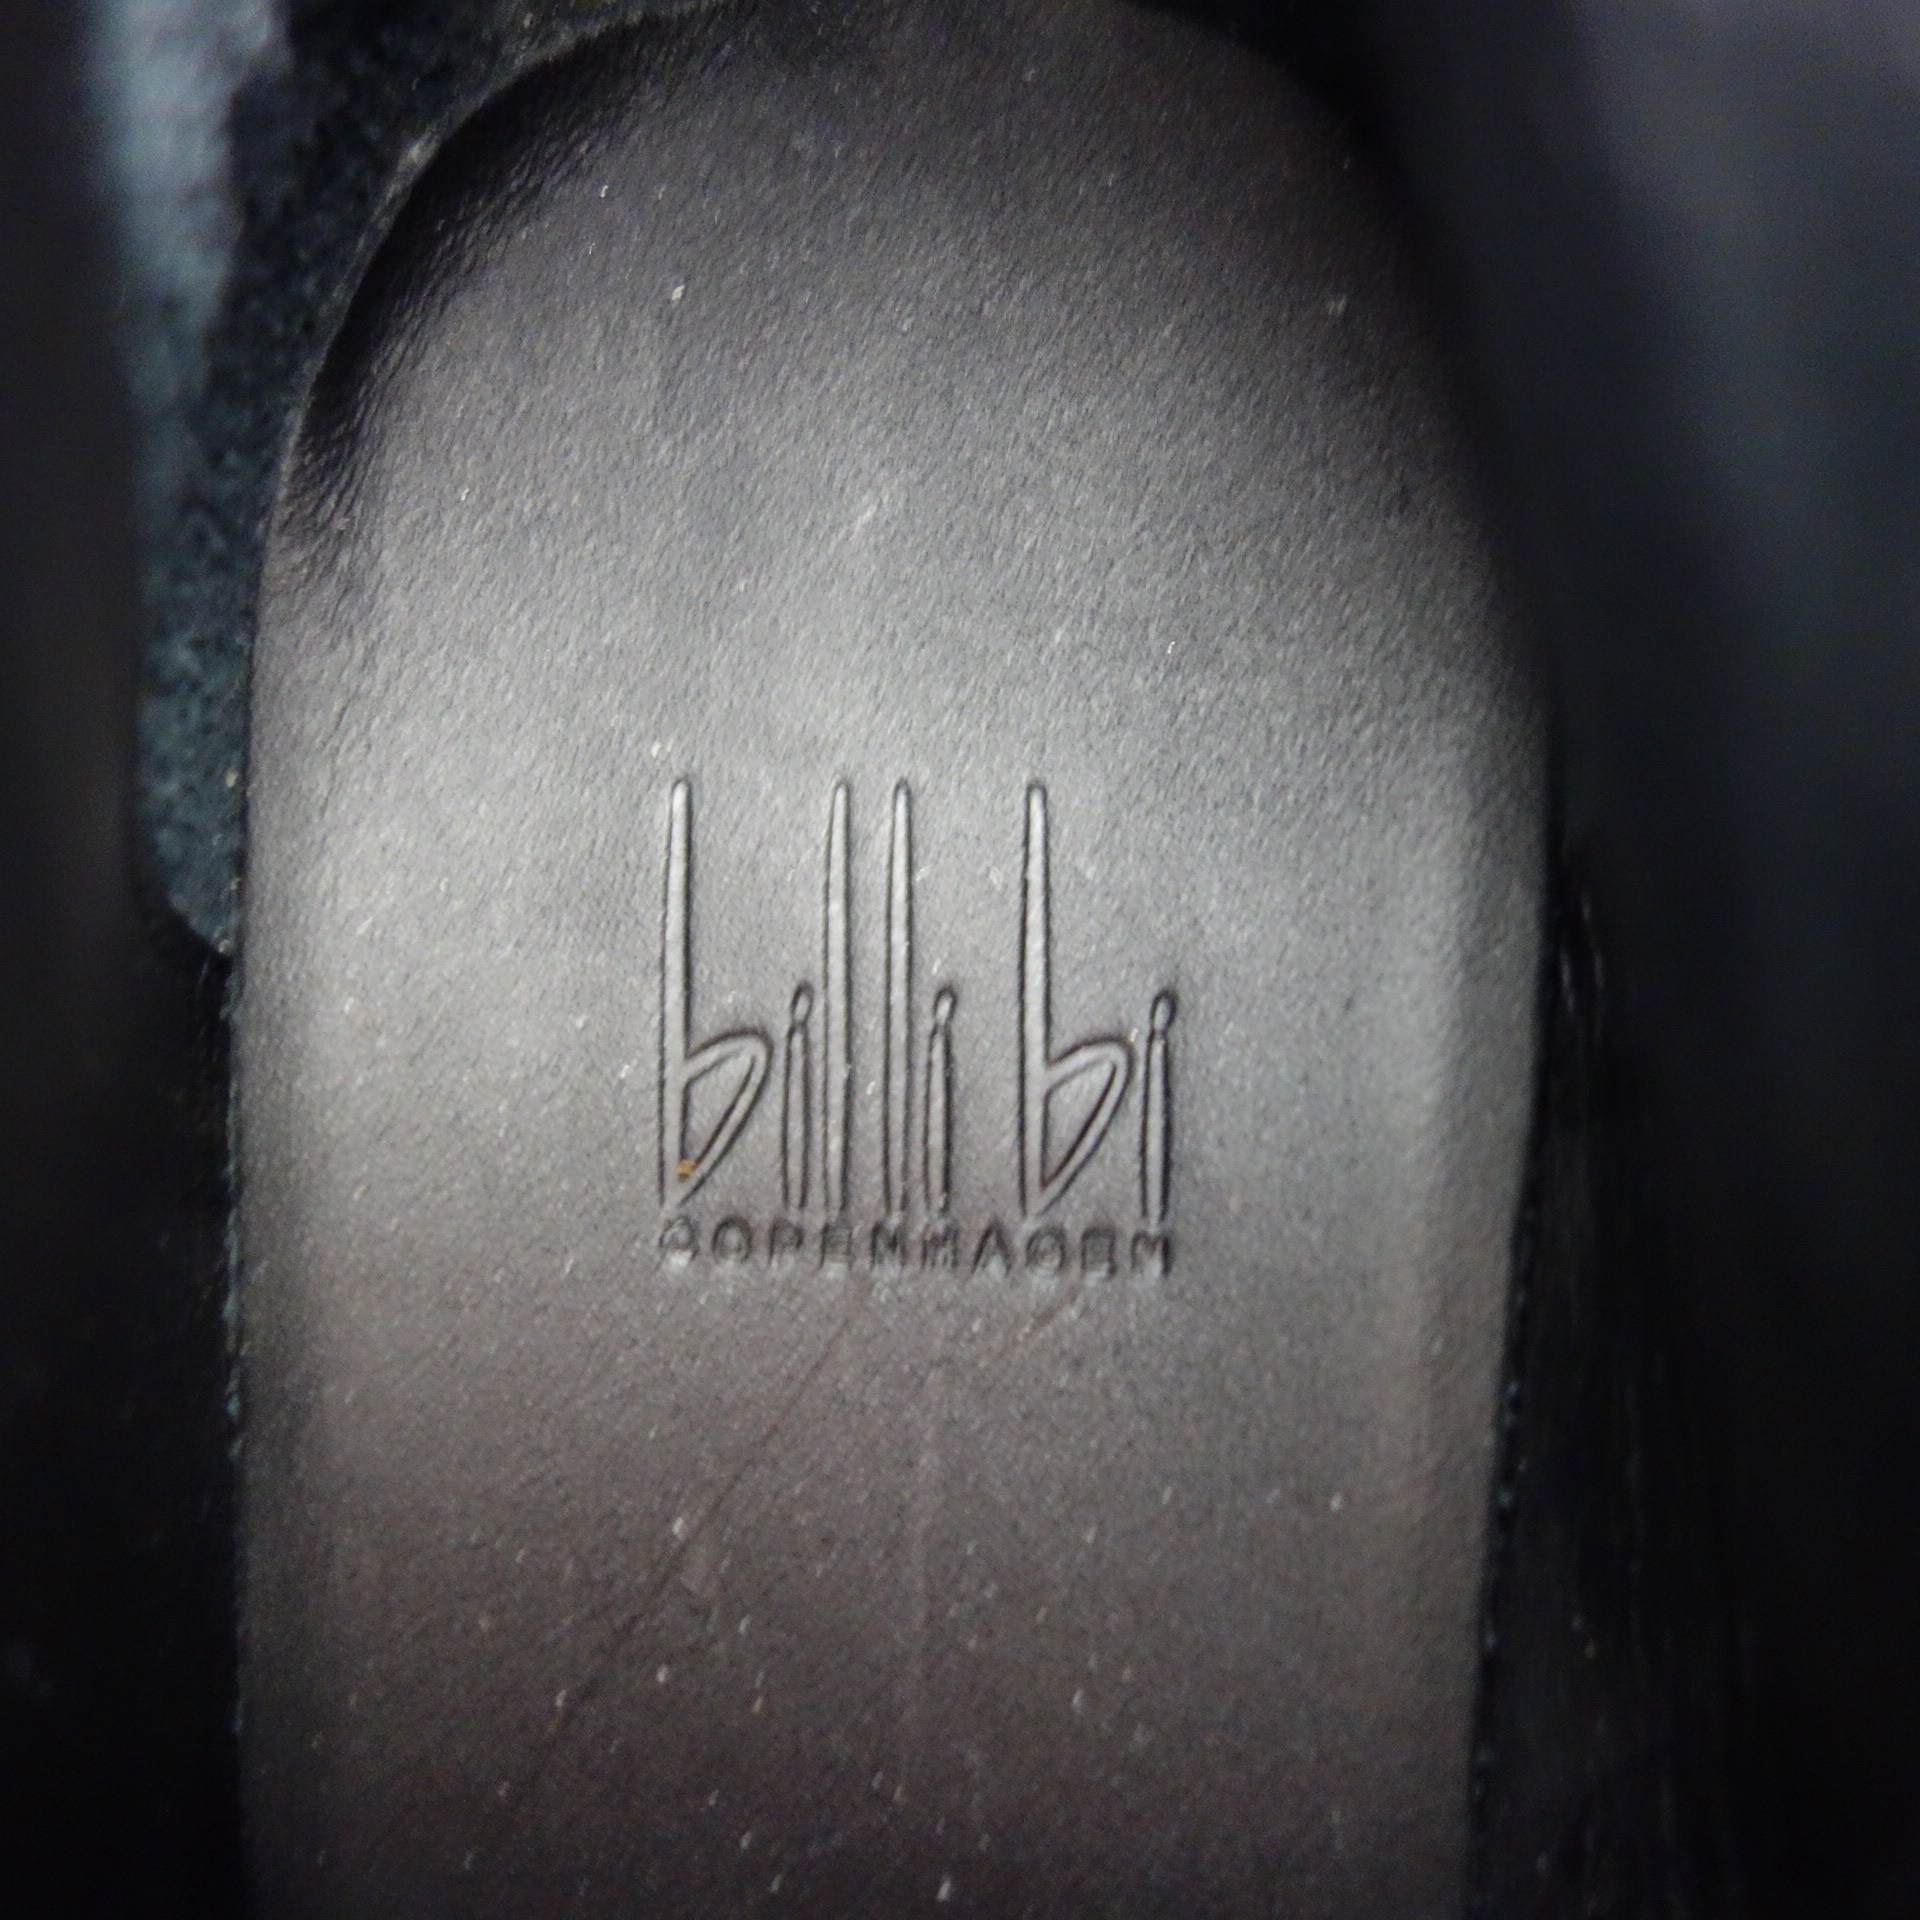 BILLI BI Damen Schuhe Stiefeletten Stiefel Boots Schwarz Leder Spitz Blockabsatz